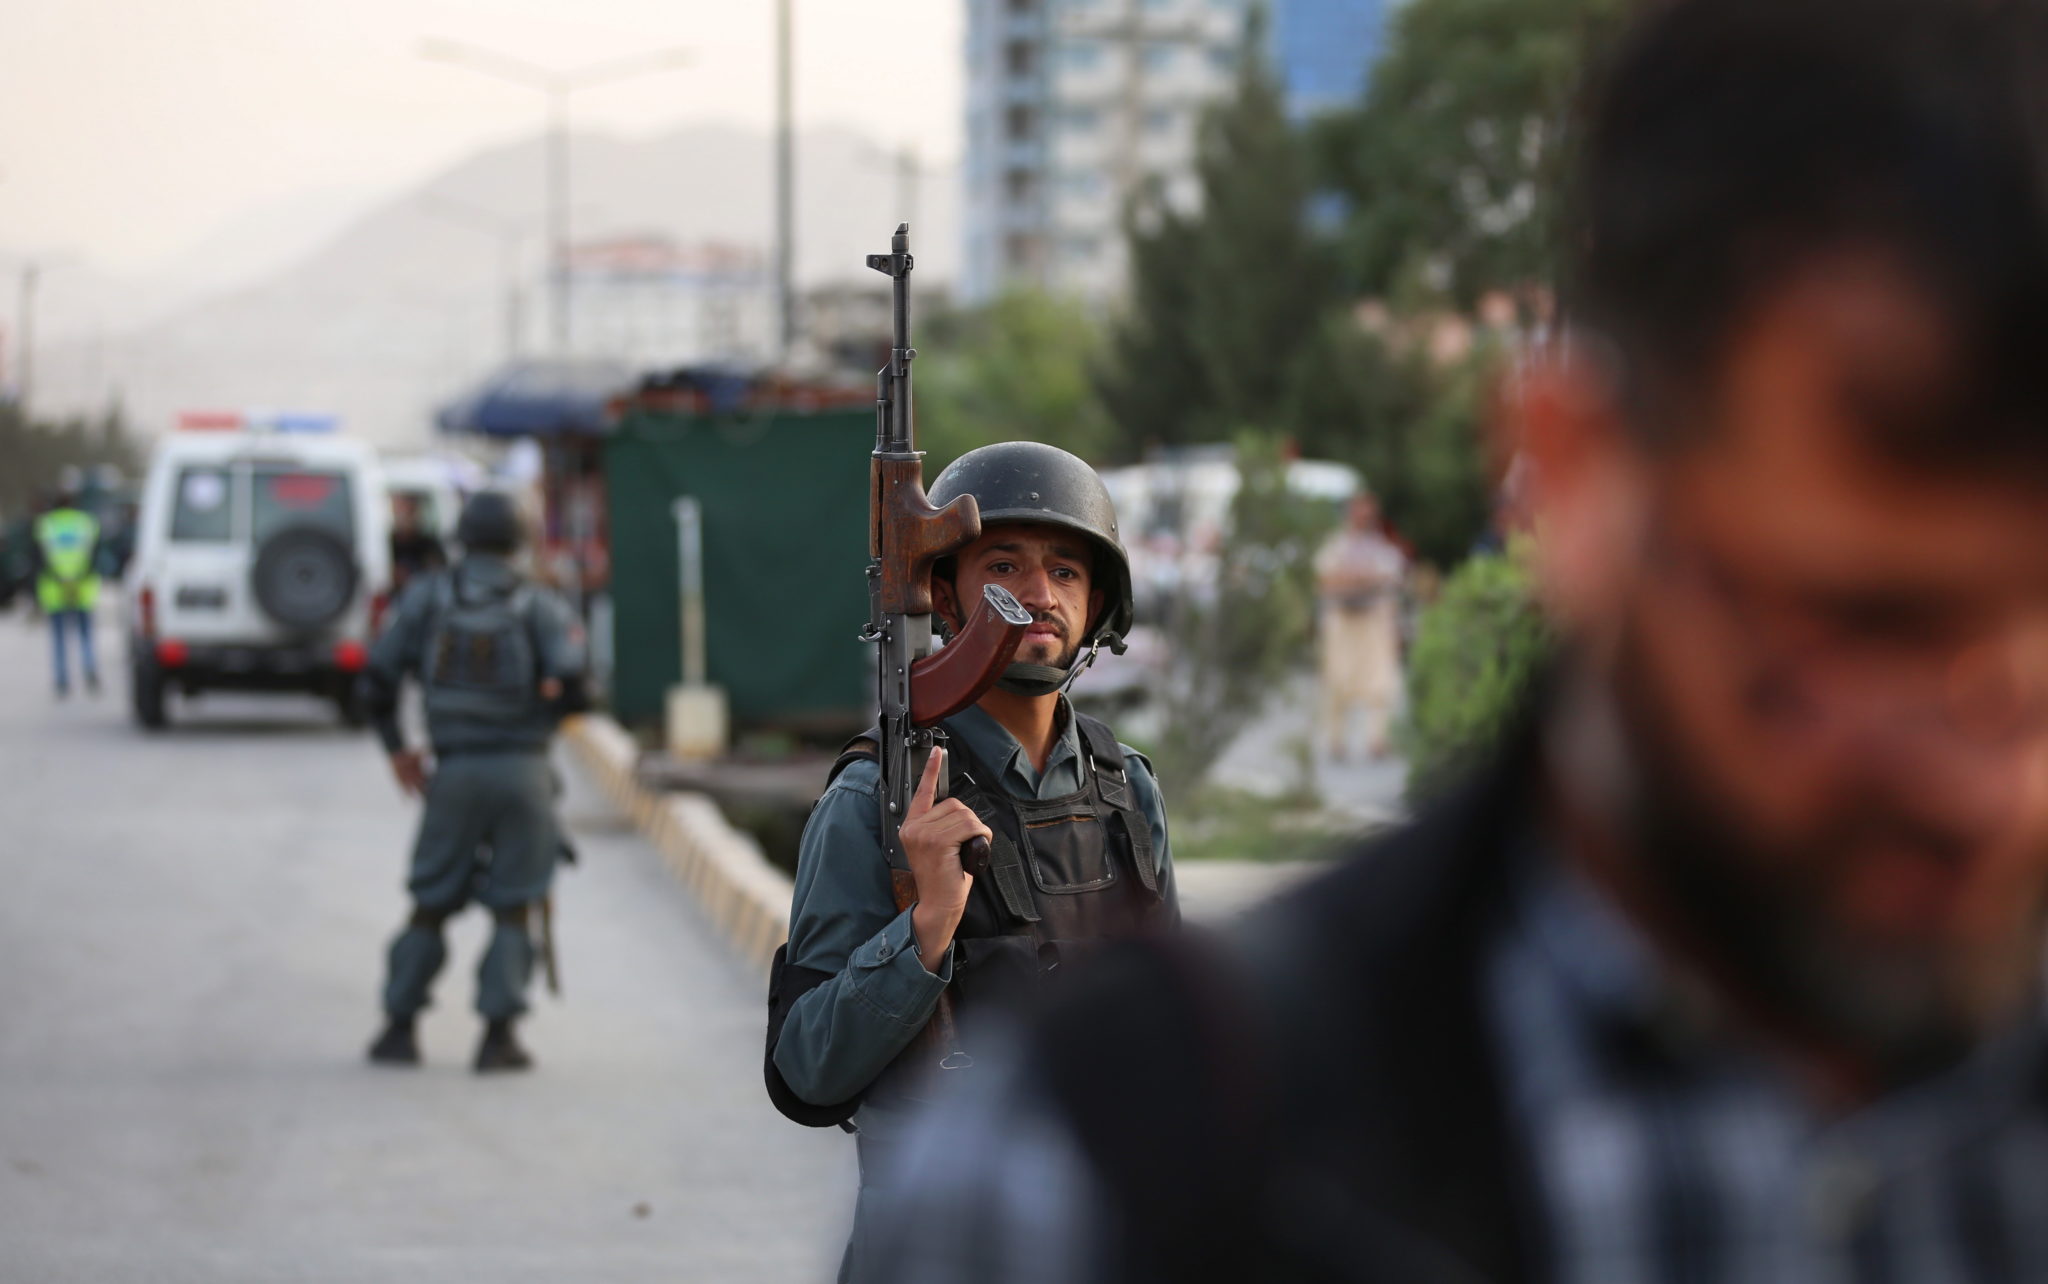 Afganistan: Siły policyjne zabezpieczają obszar po eksplozji. Według wstępnych doniesień, w wybuchach zostało rannych co najmniej sześć osób . Fot. JAWAD JALALI, PAP/EPA.